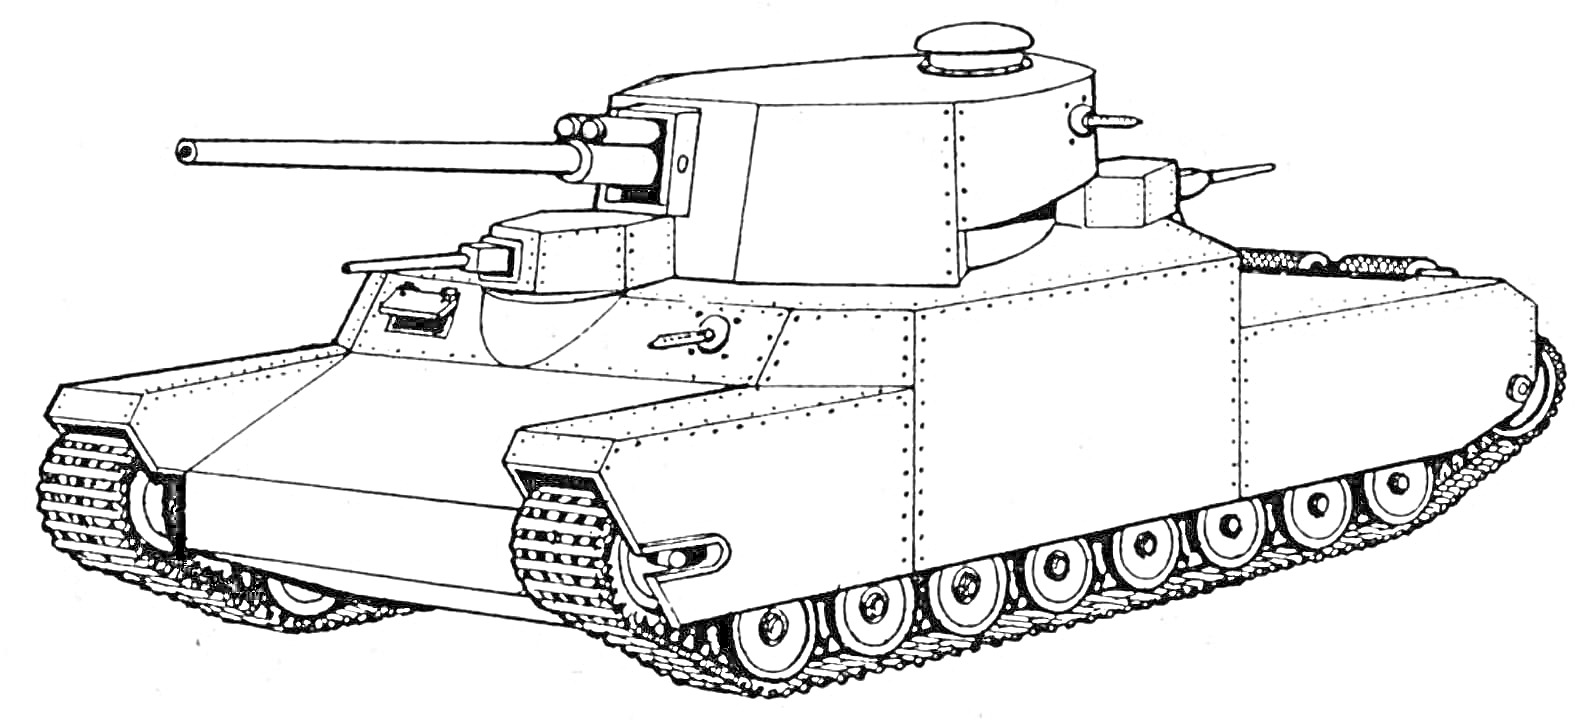 Раскраска Легковой танк с длинной пушкой и бронированным корпусом, на гусеничном ходу, боковая проекция, вид слева